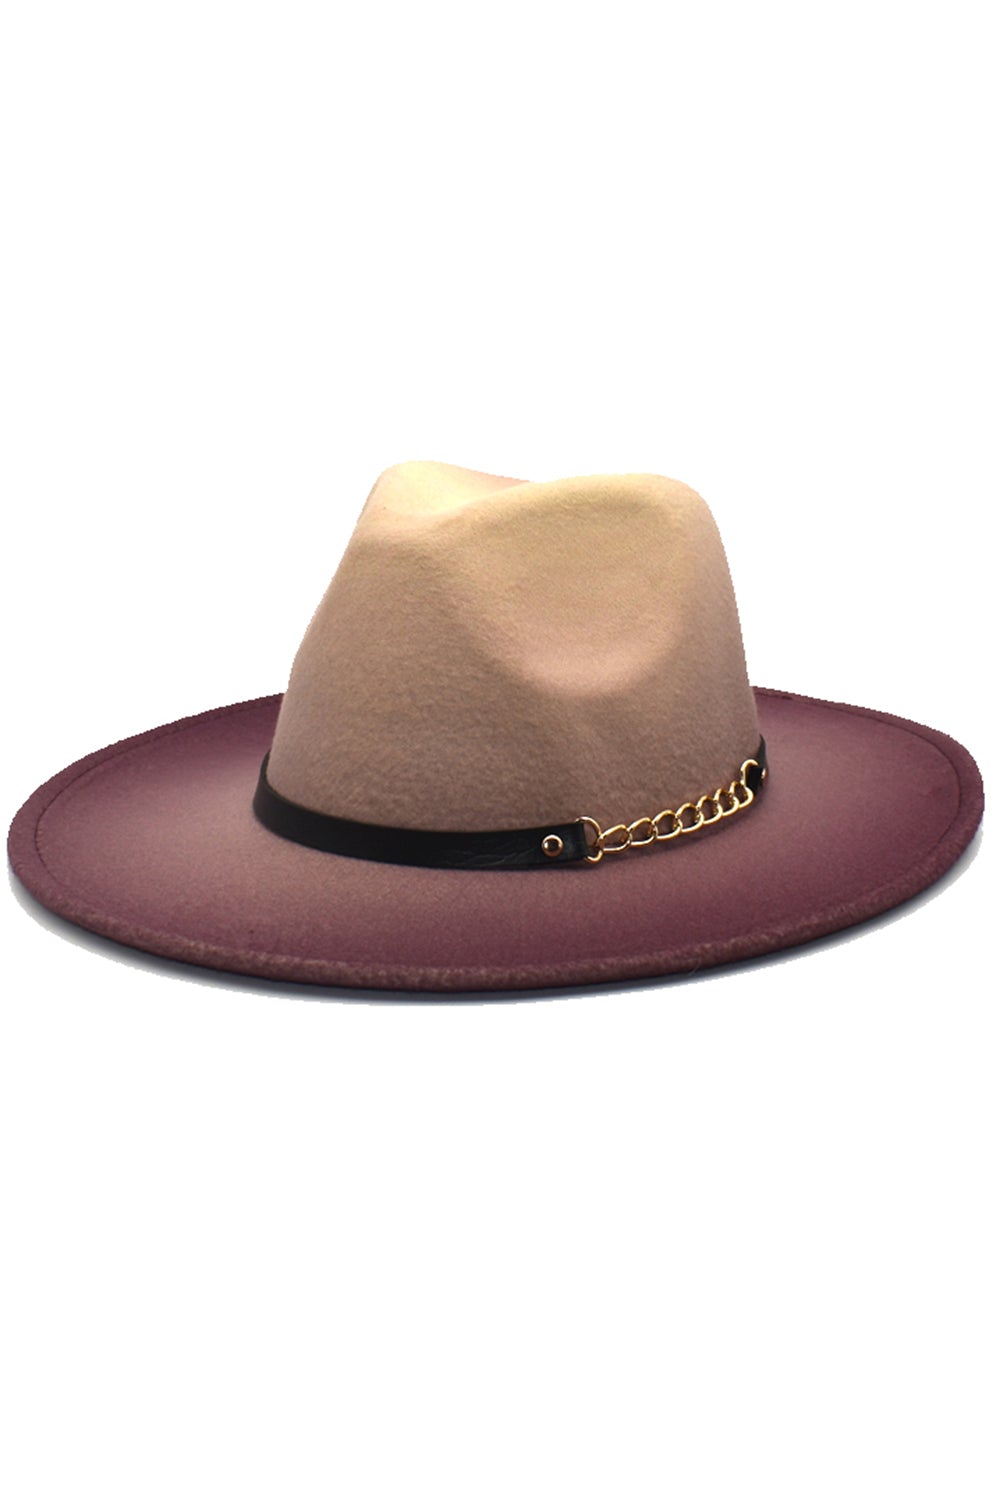 Caramel Vintage 1920s Bowler Hat